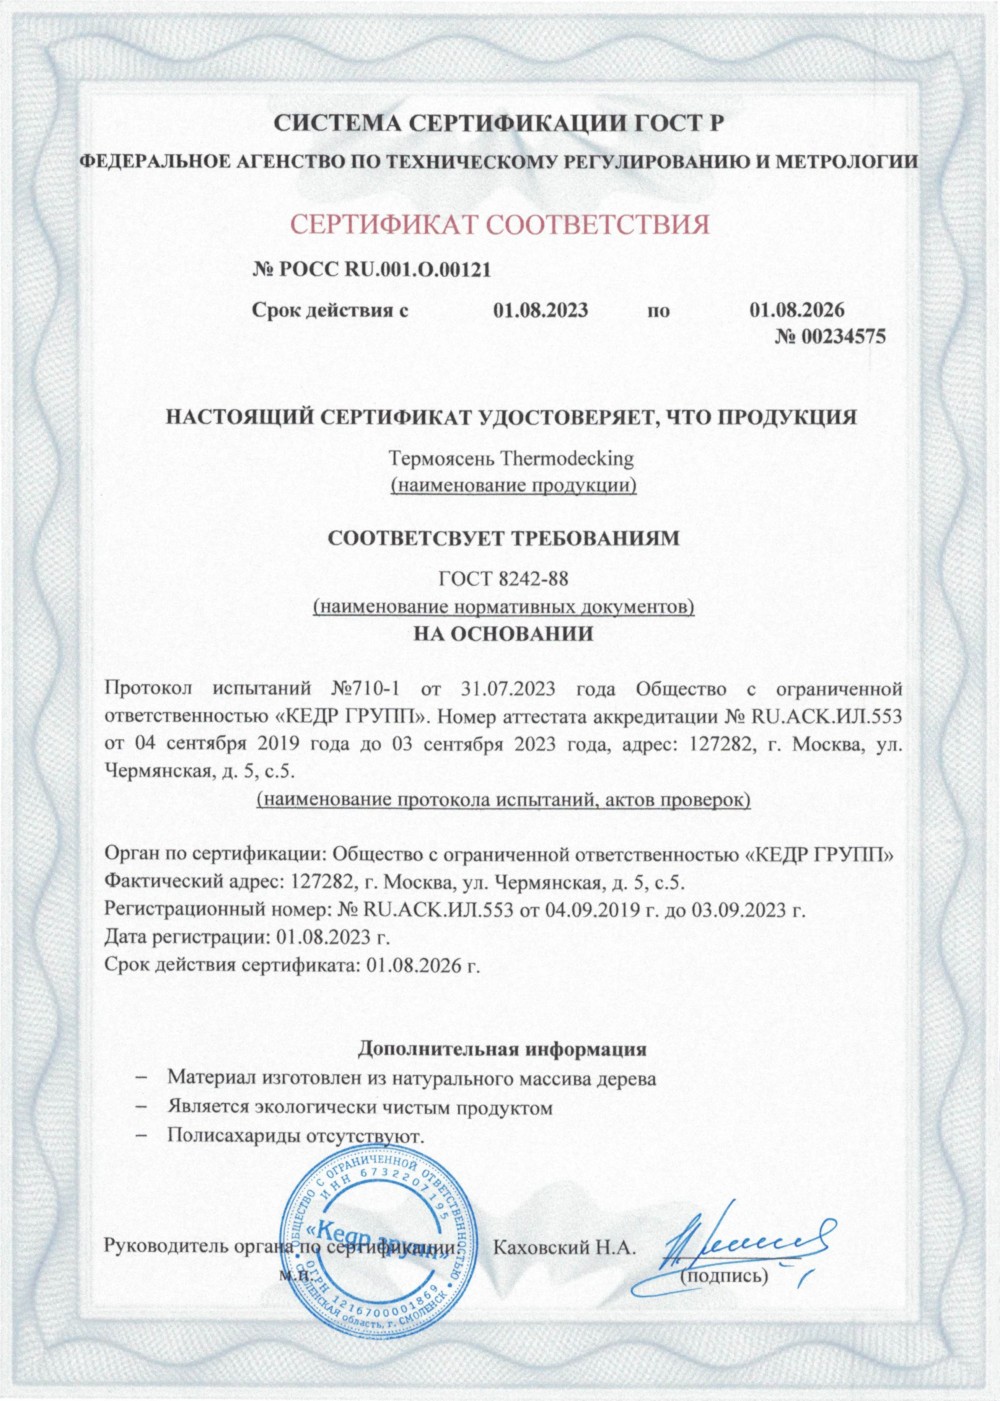 Сертификат соответствия - термоясень